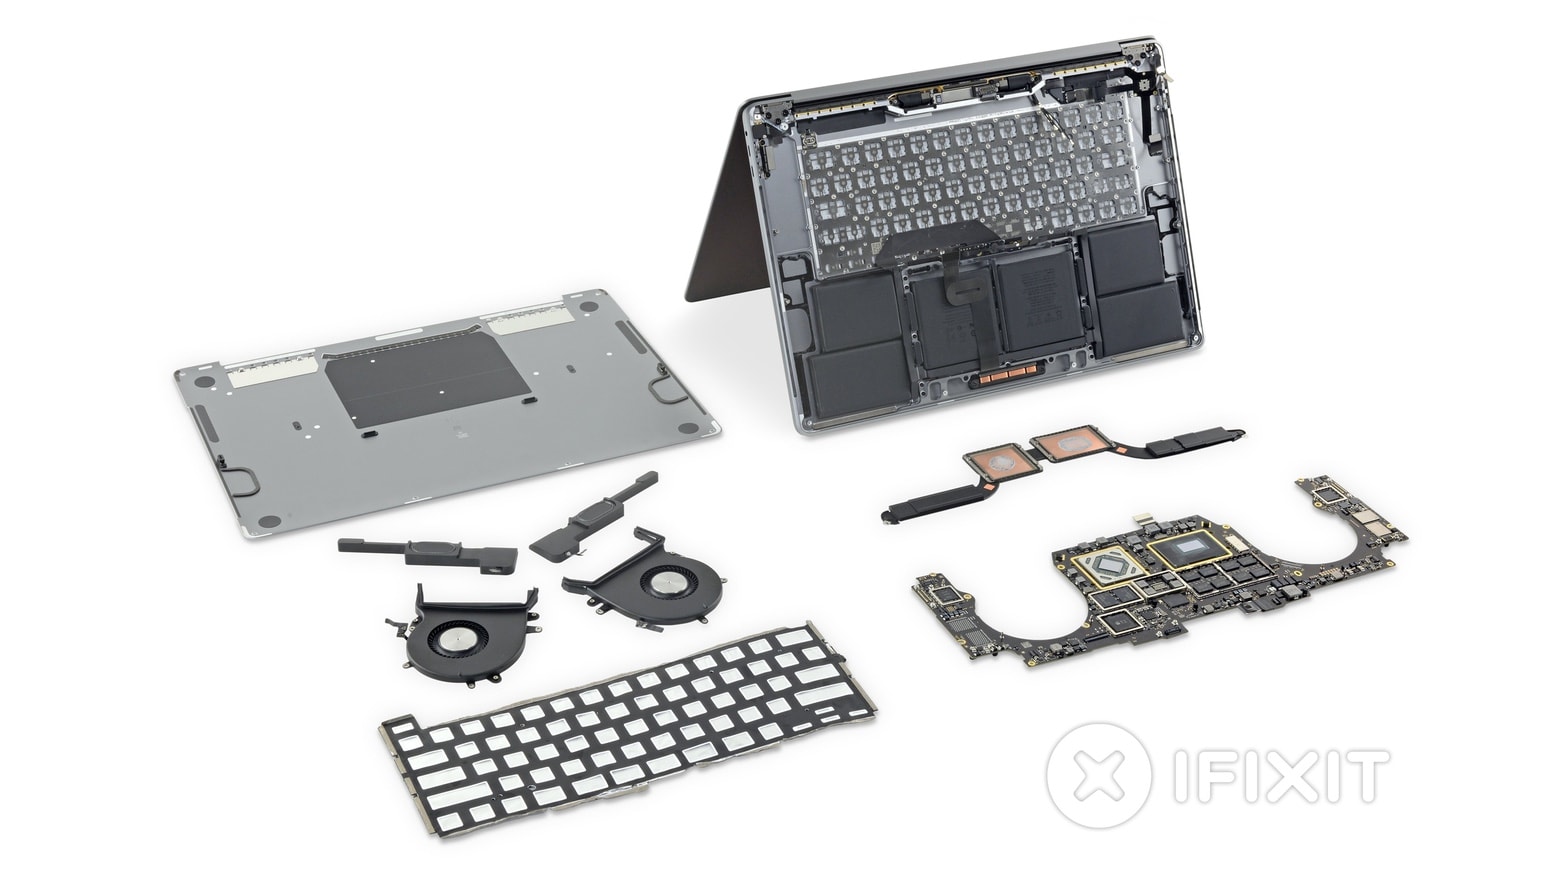 16-inch MacBook teardown by iFixit